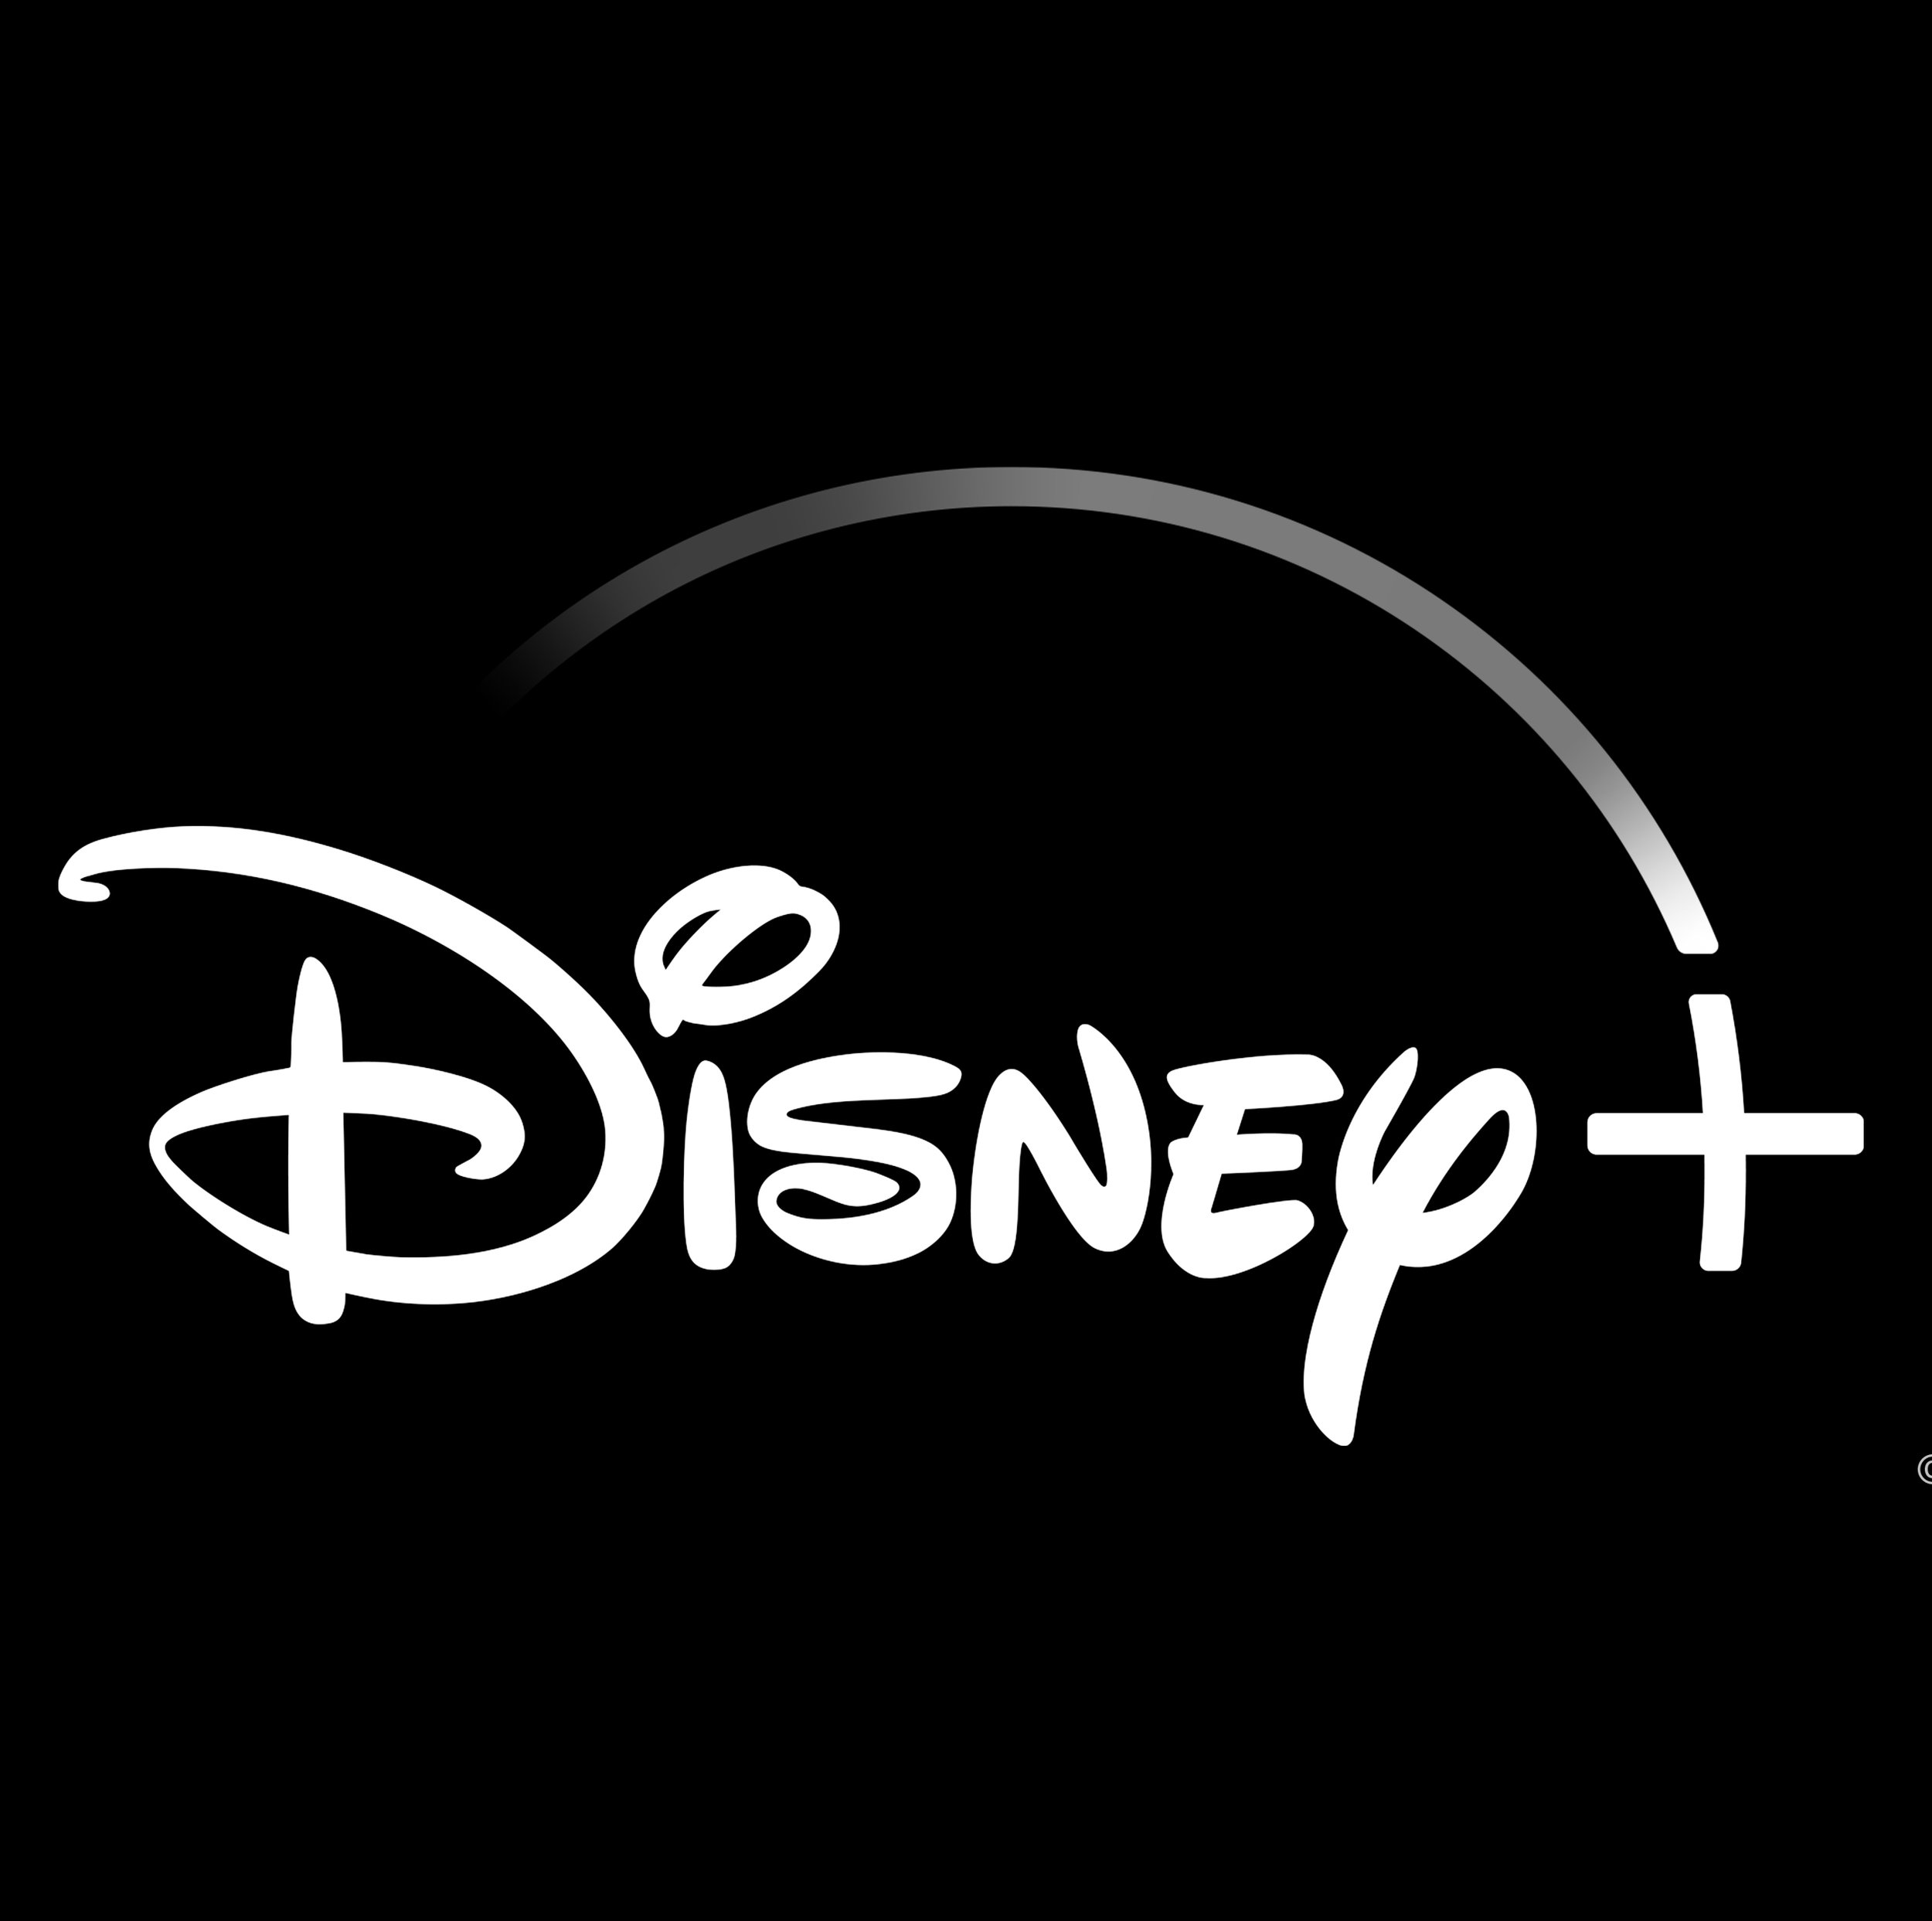 black and white Disney+good_Color_Logo.jpg